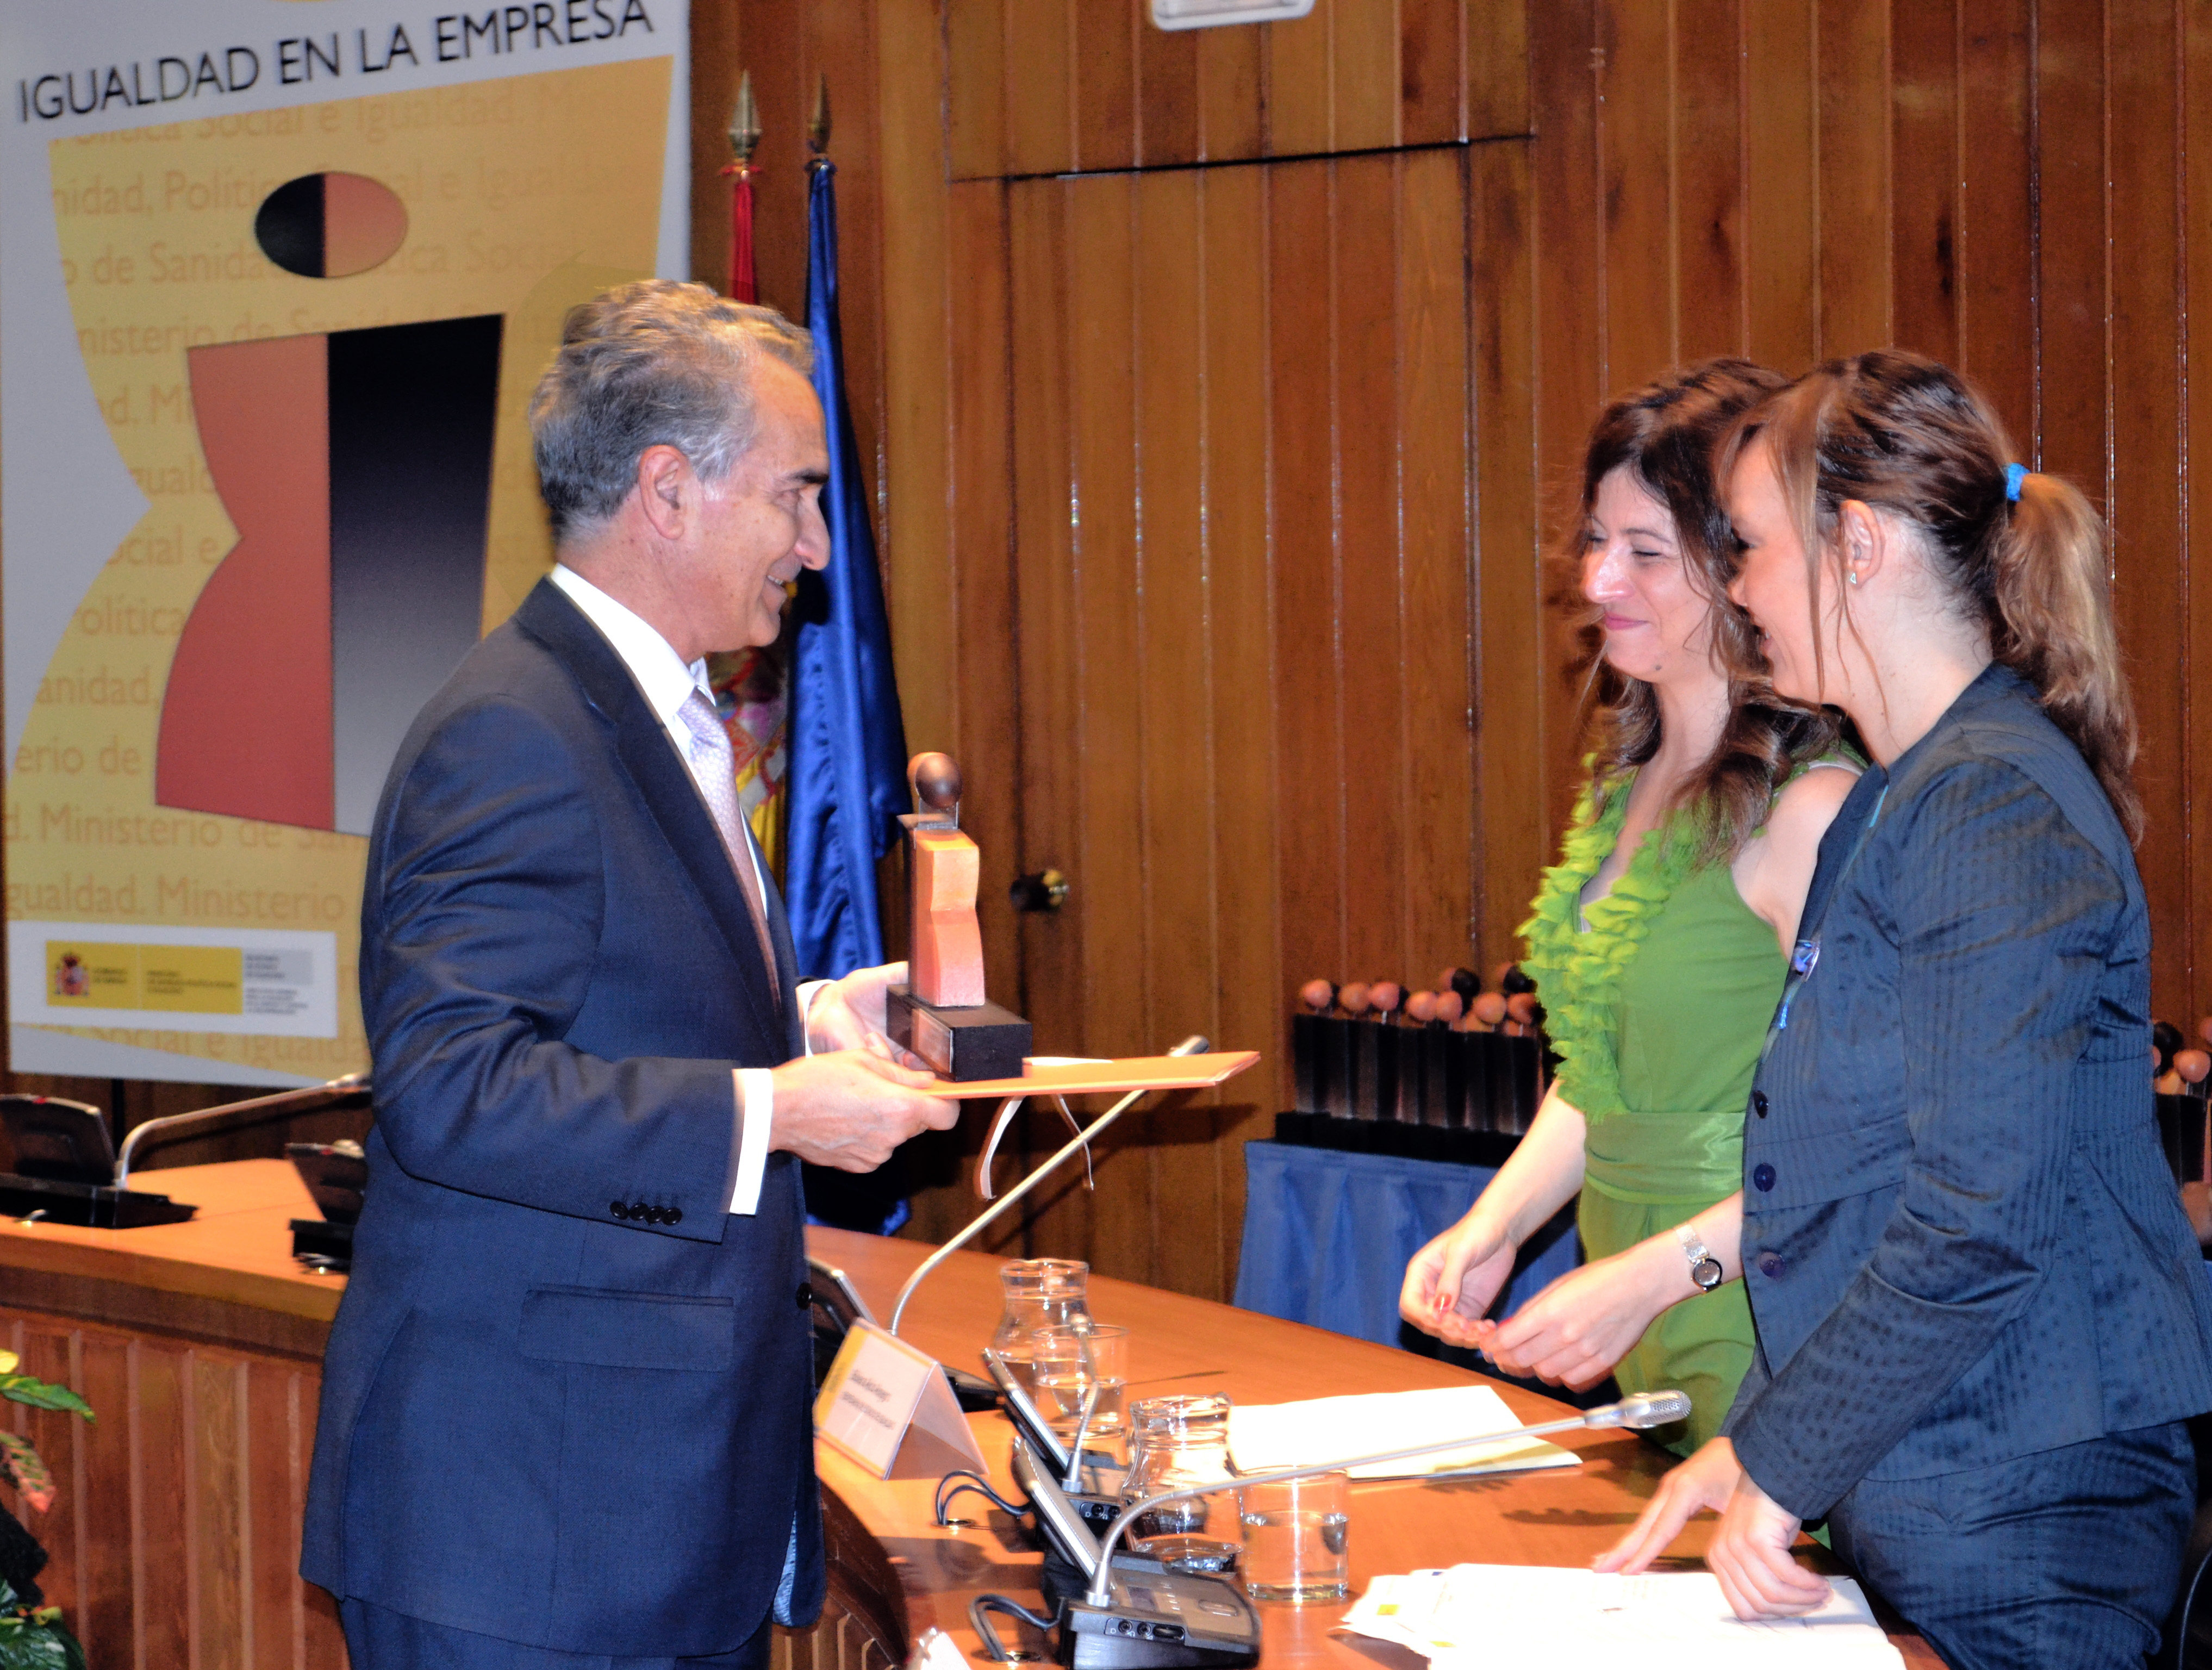 Aqualia recibe el distintivo de  Igualdad en la Empresa  concedido por el Ministerio de Sanidad